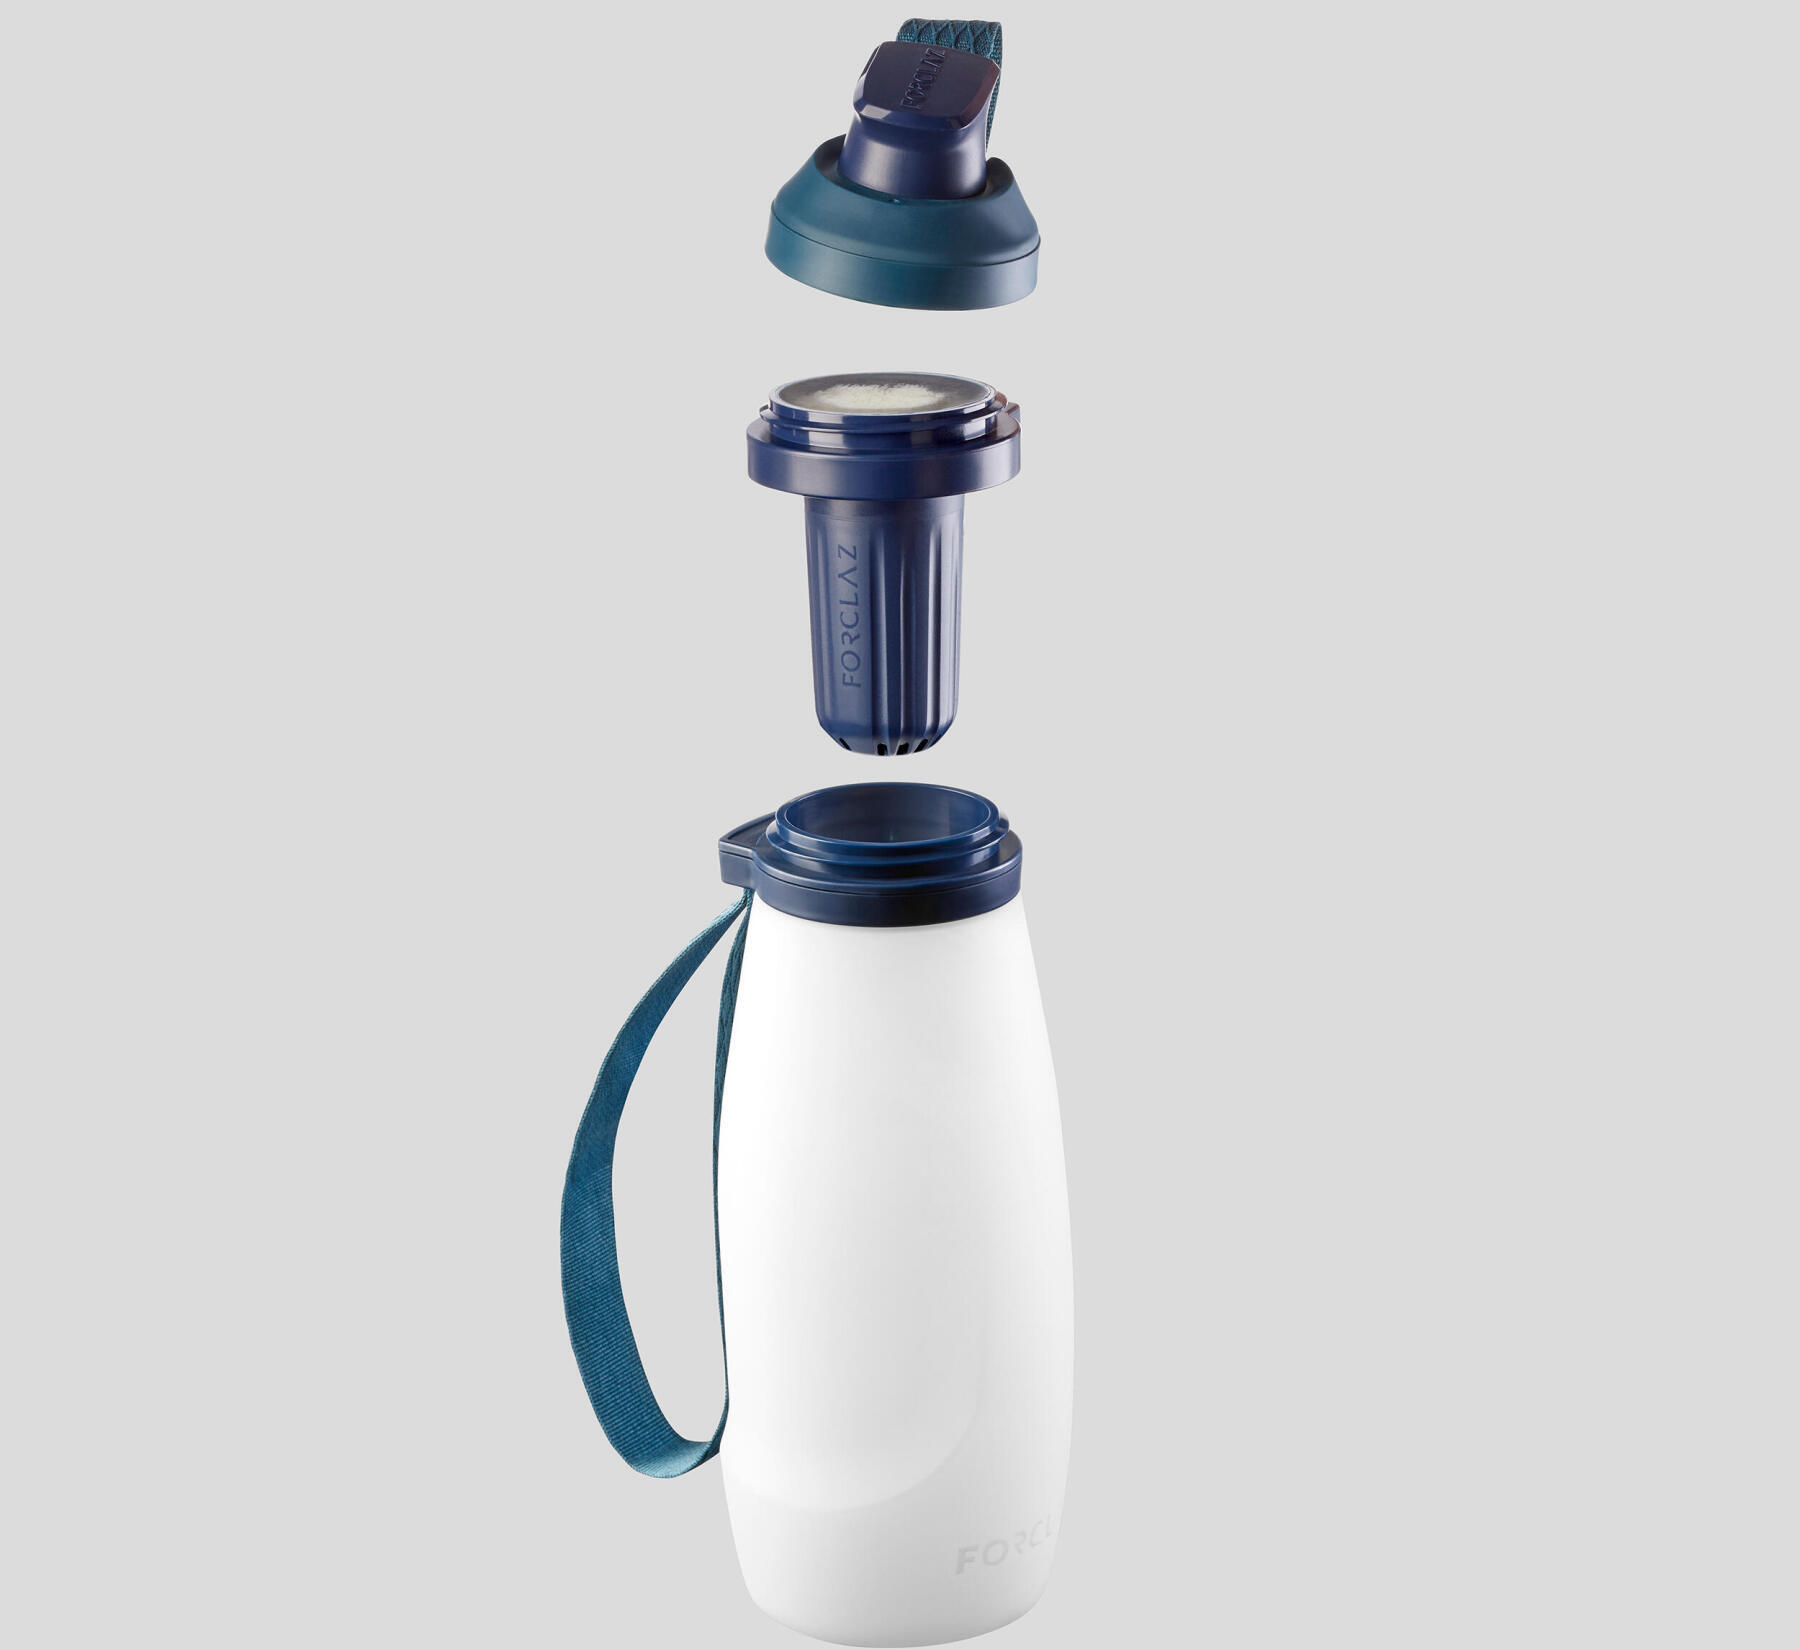 Forclaz filtered water bottle